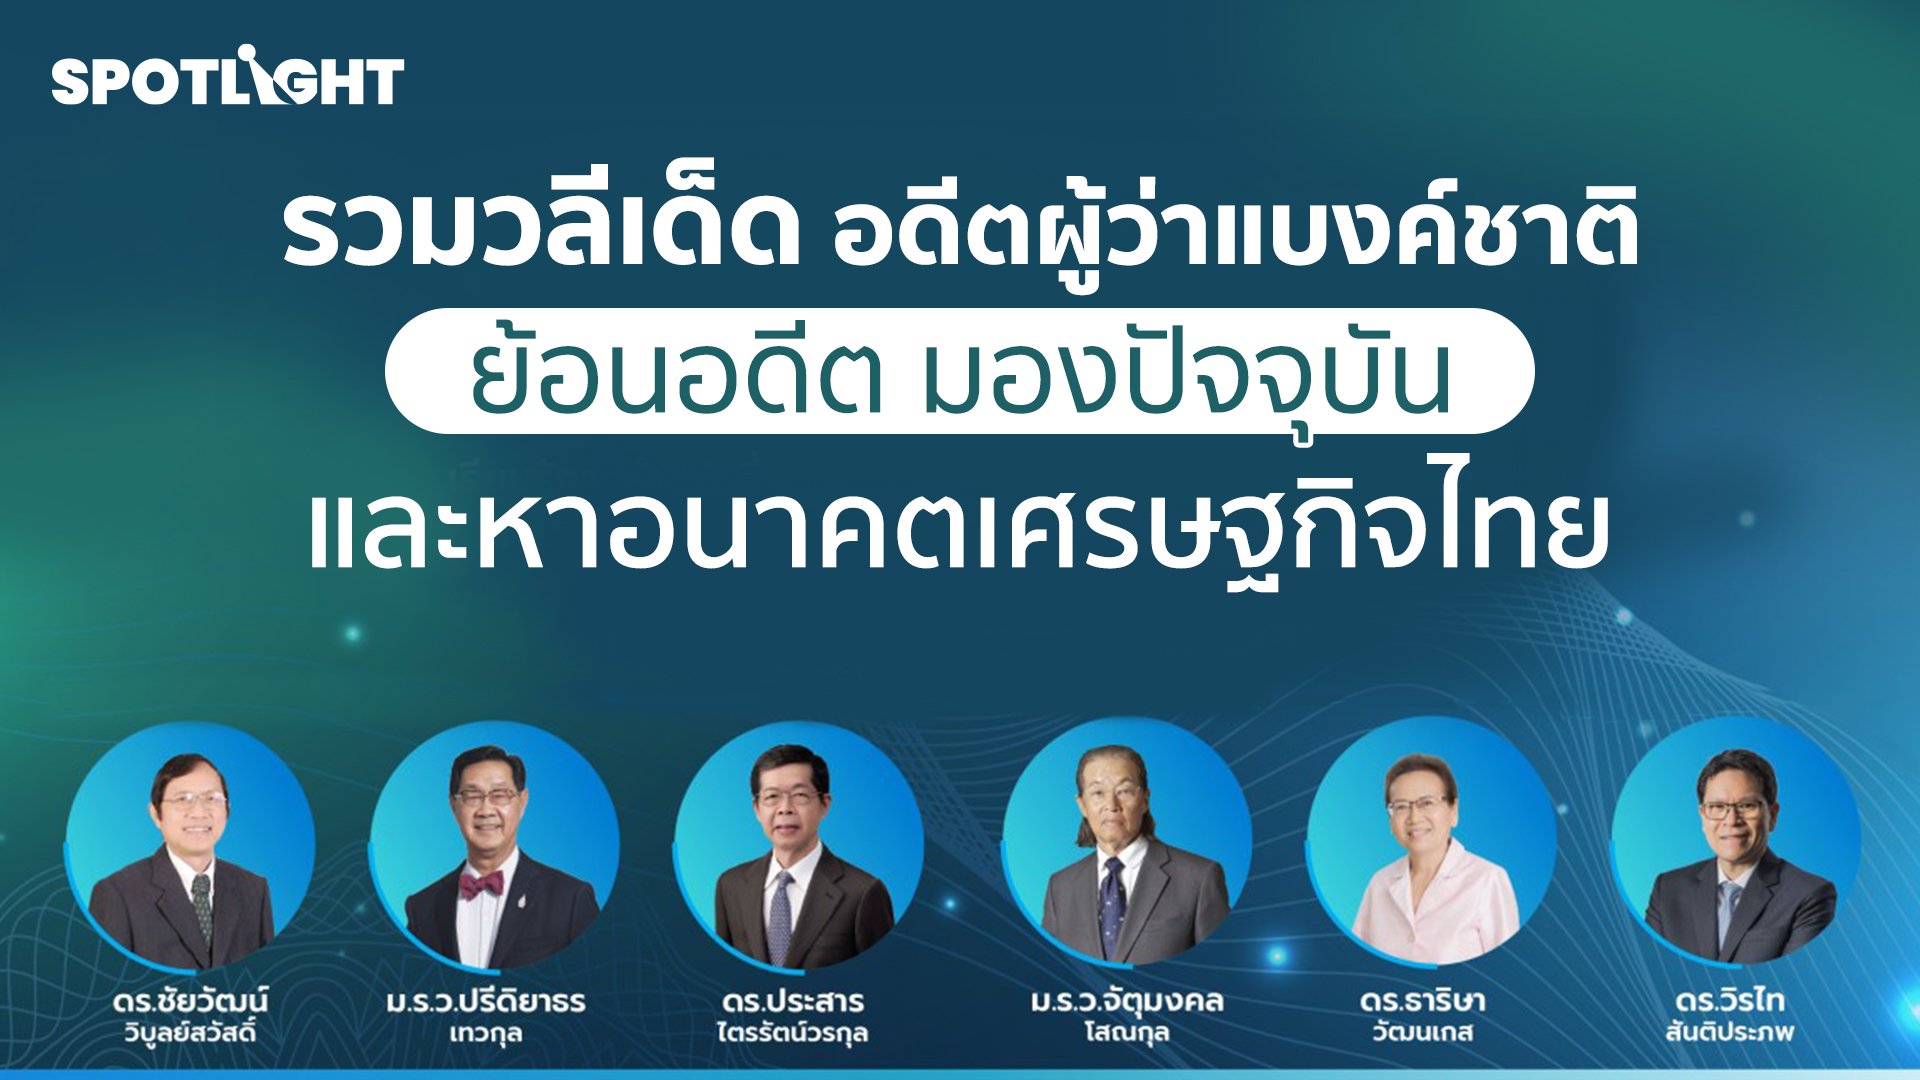 รวมวลีเด็ด อดีตผู้ว่าฯ ธนาคารแห่งประเทศไทย ย้อนอดีต มองปัจจุบัน และหาอนาคตเศรษฐกิจไทย | Spotlight | 7 เม.ย. 65 | AMARIN TVHD34